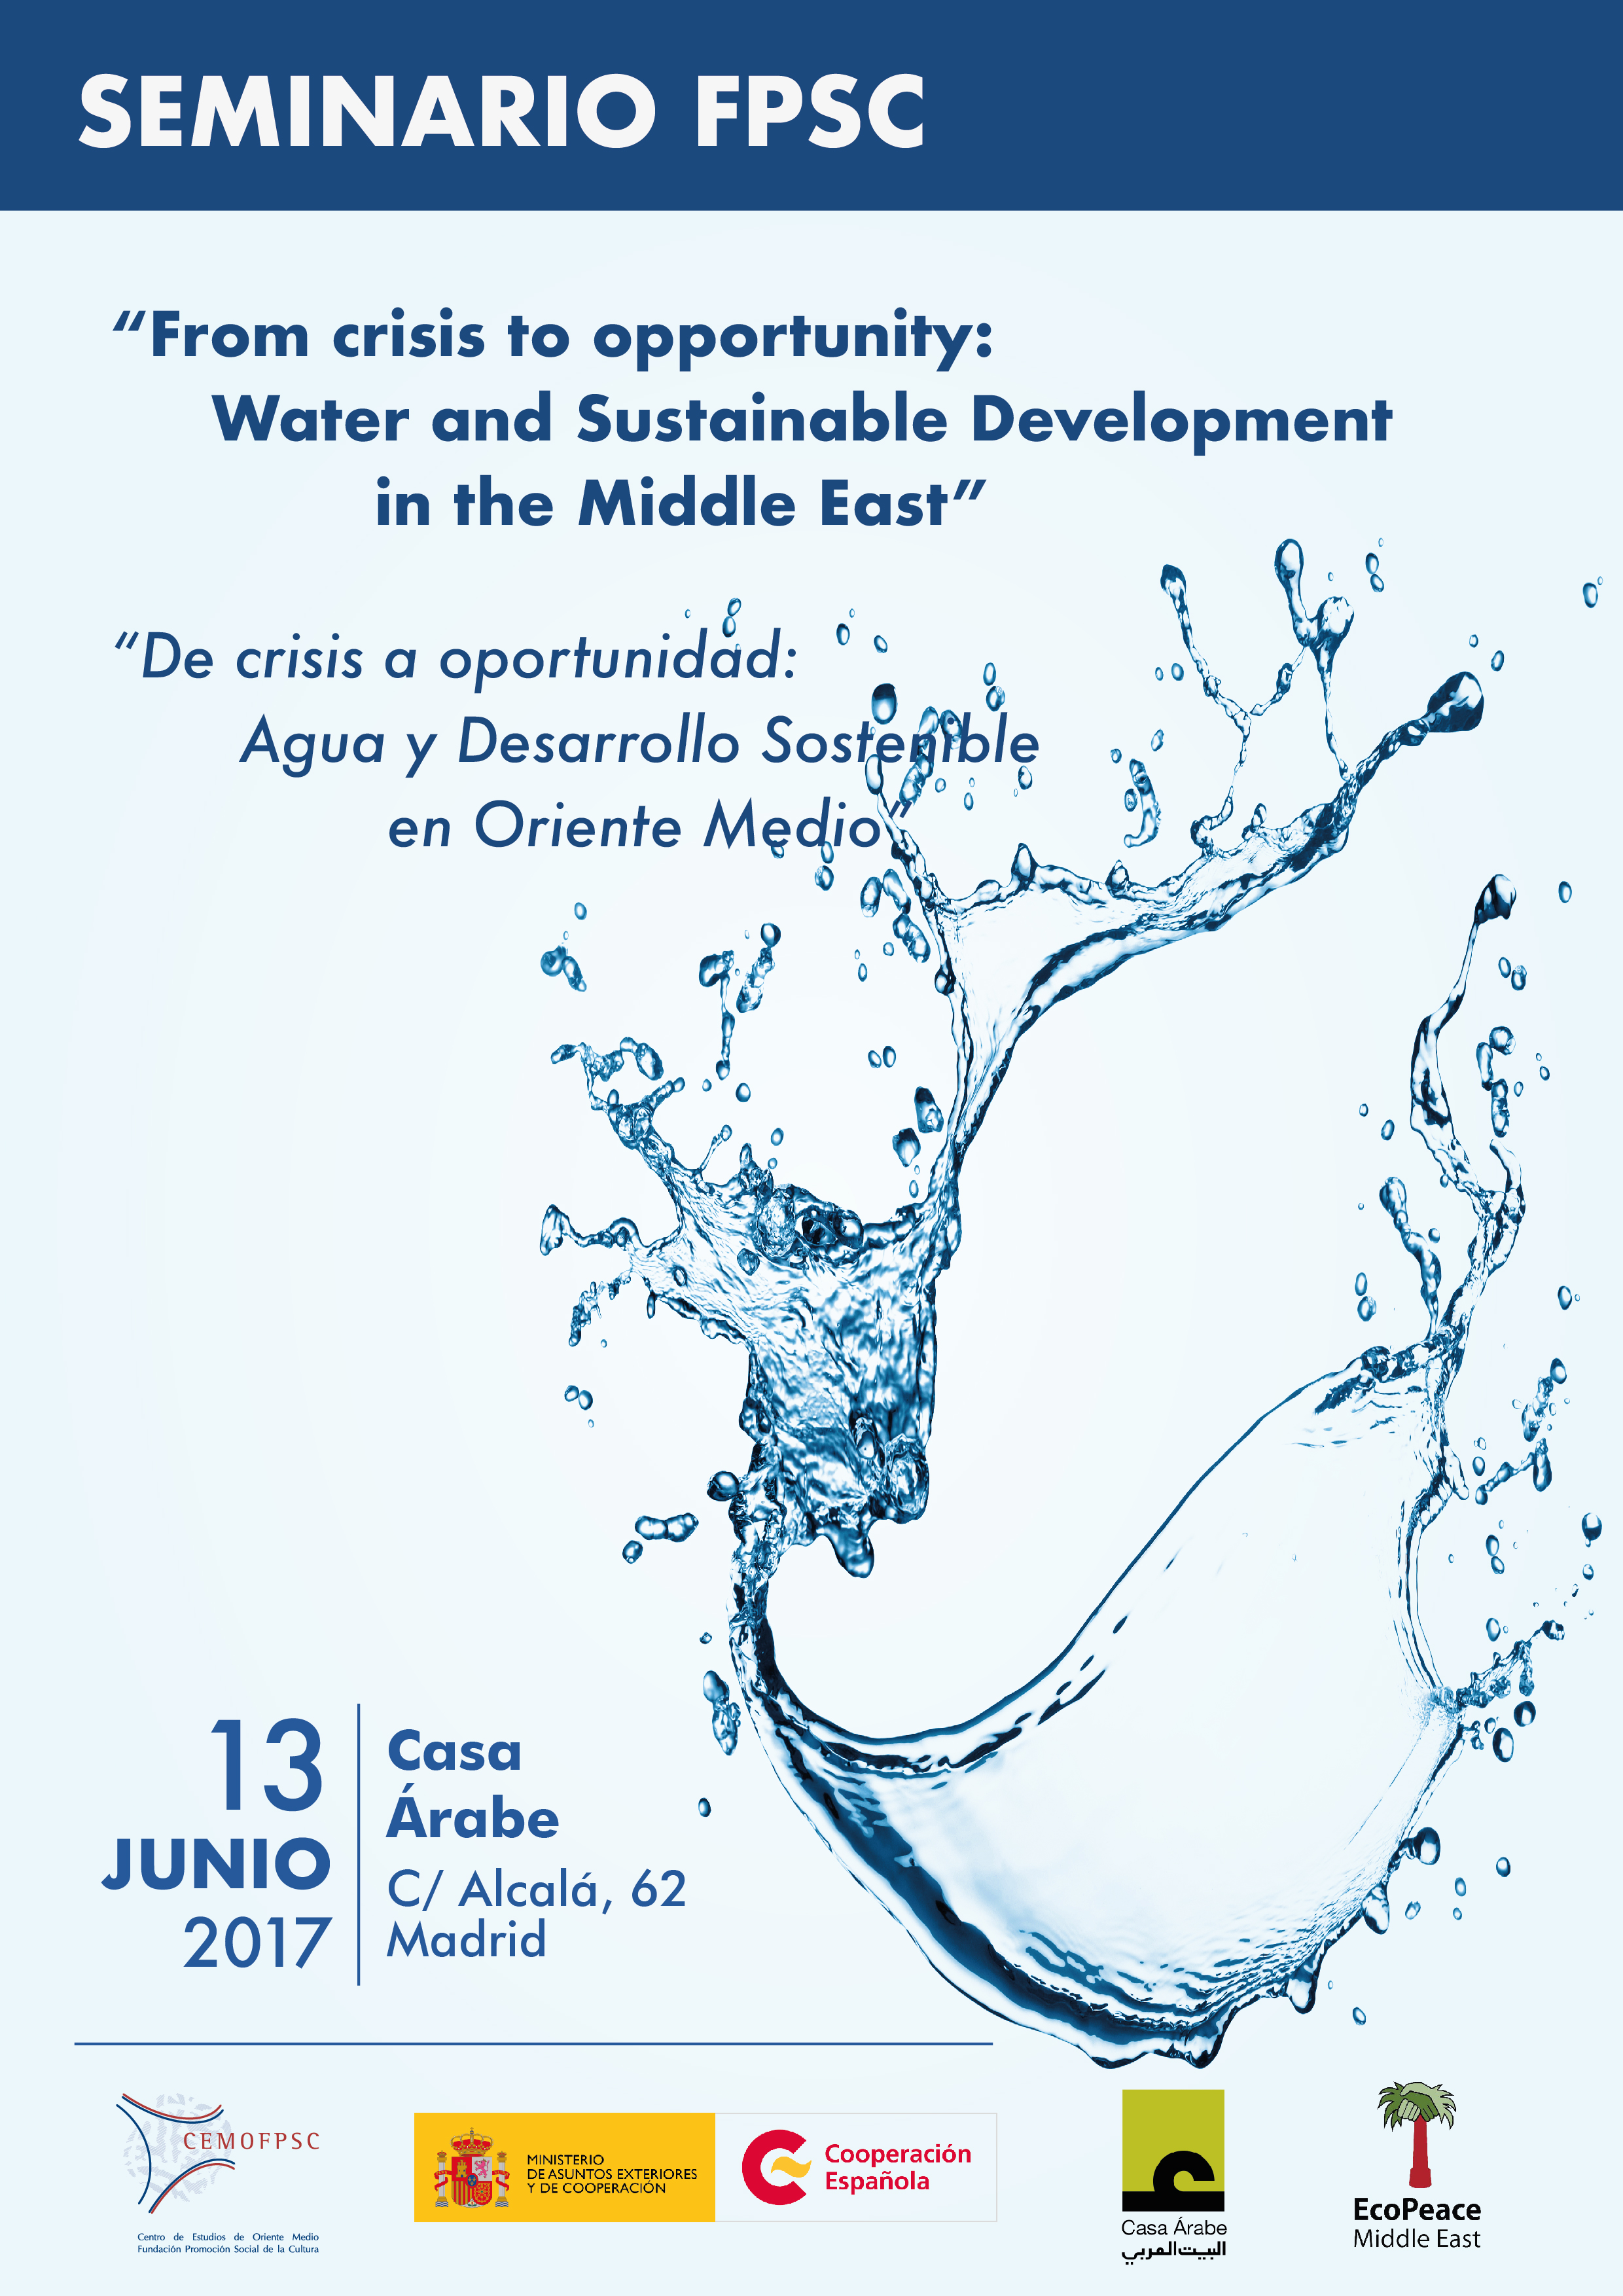 Seminari 'De crisi a oportunitat: Aigua y Desenvolupament Sostenible a l'Orient Mitjà'